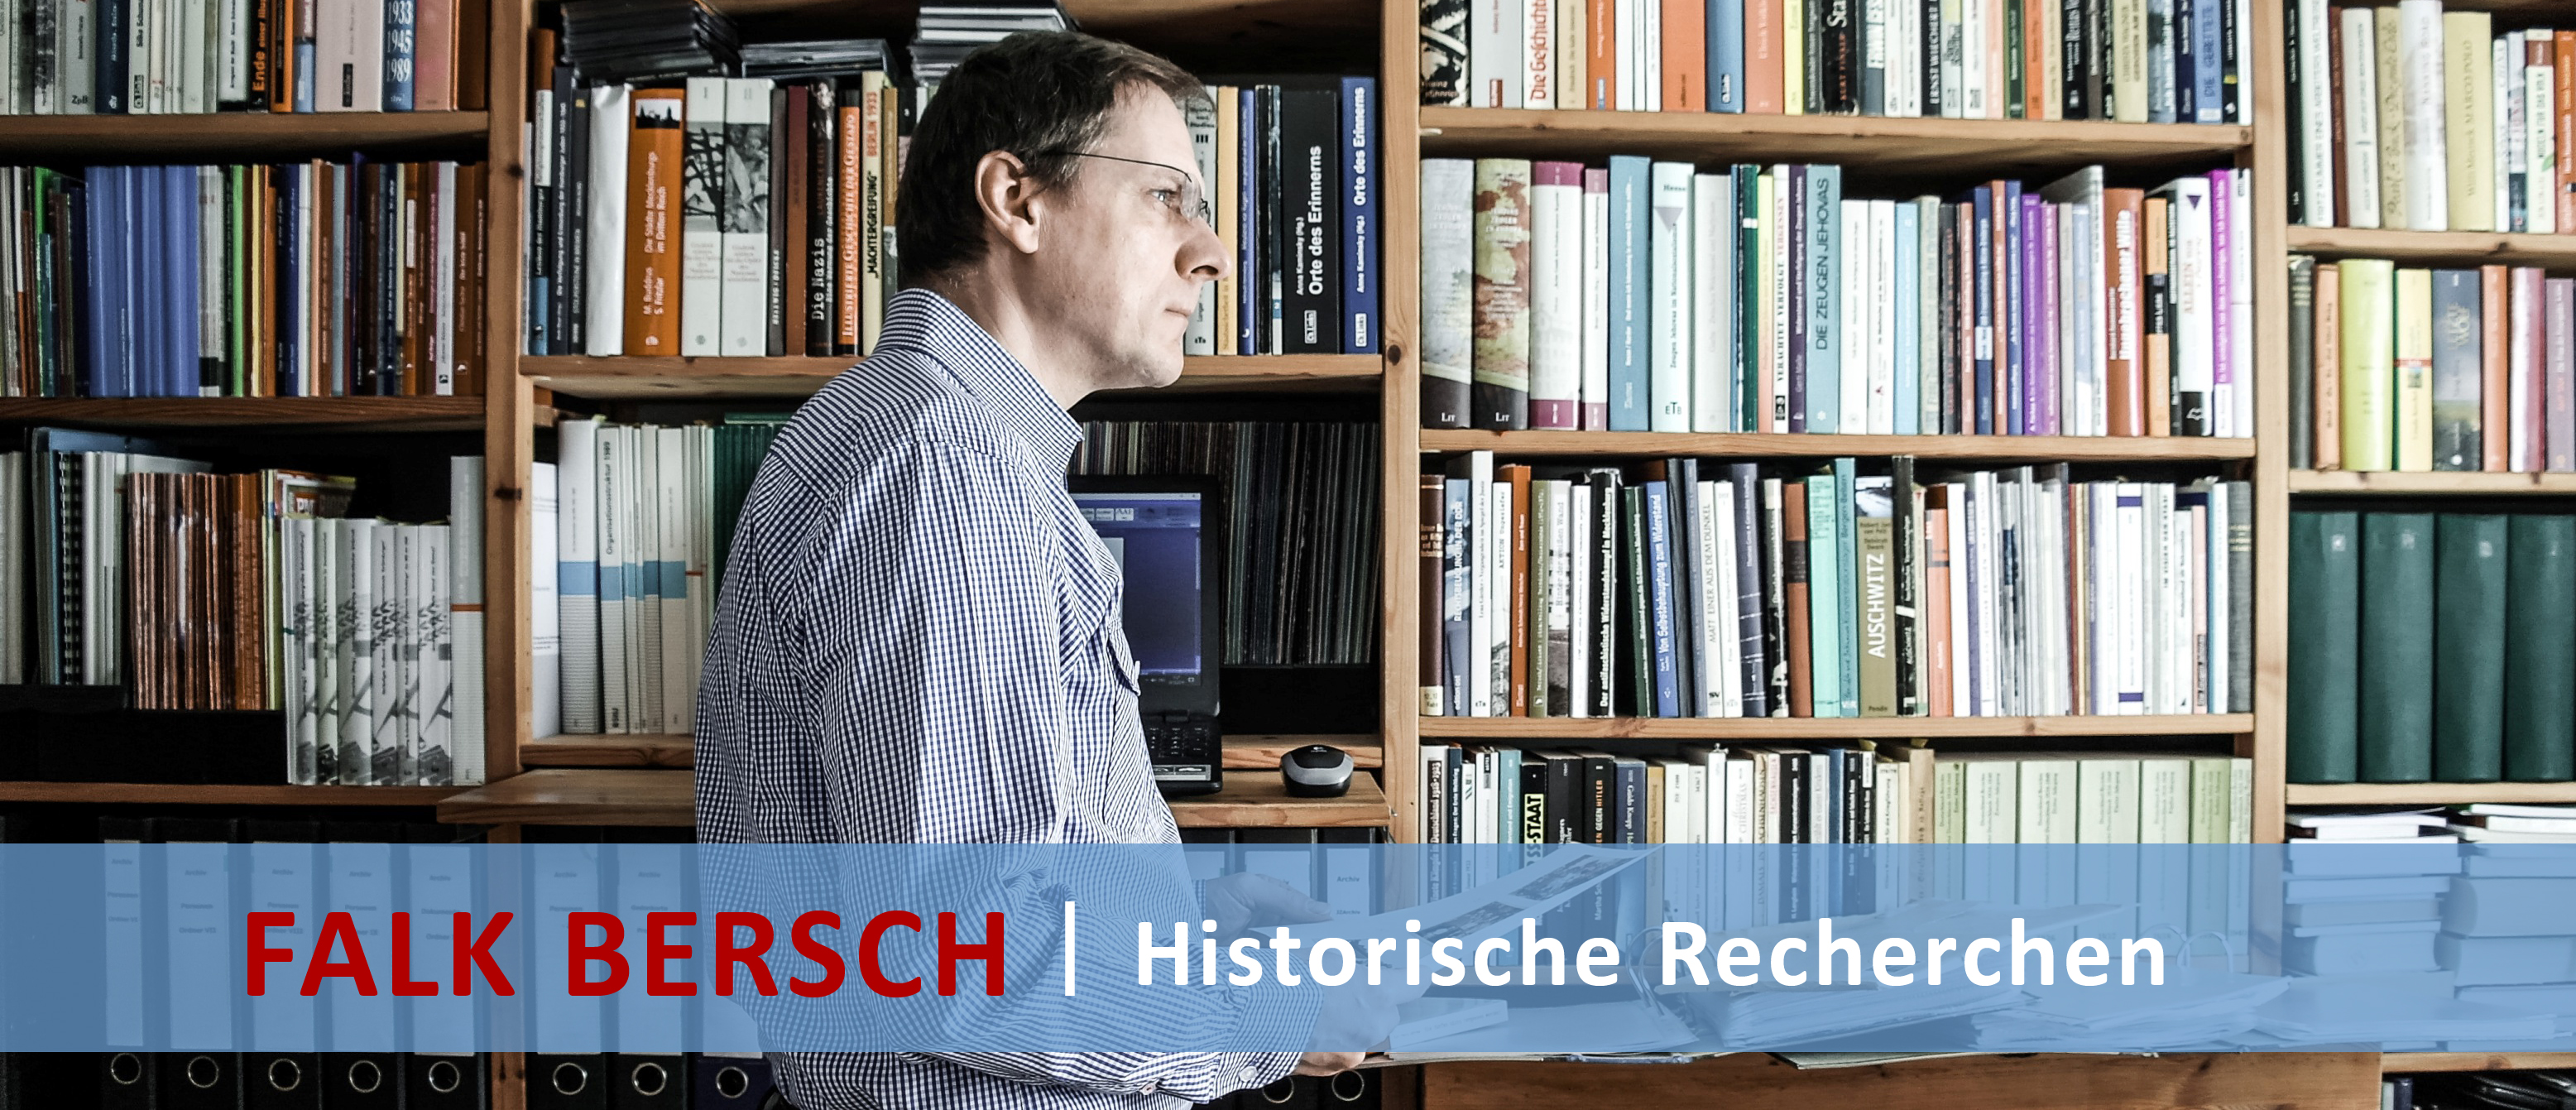 Falk Bersch Website historische Recherchen